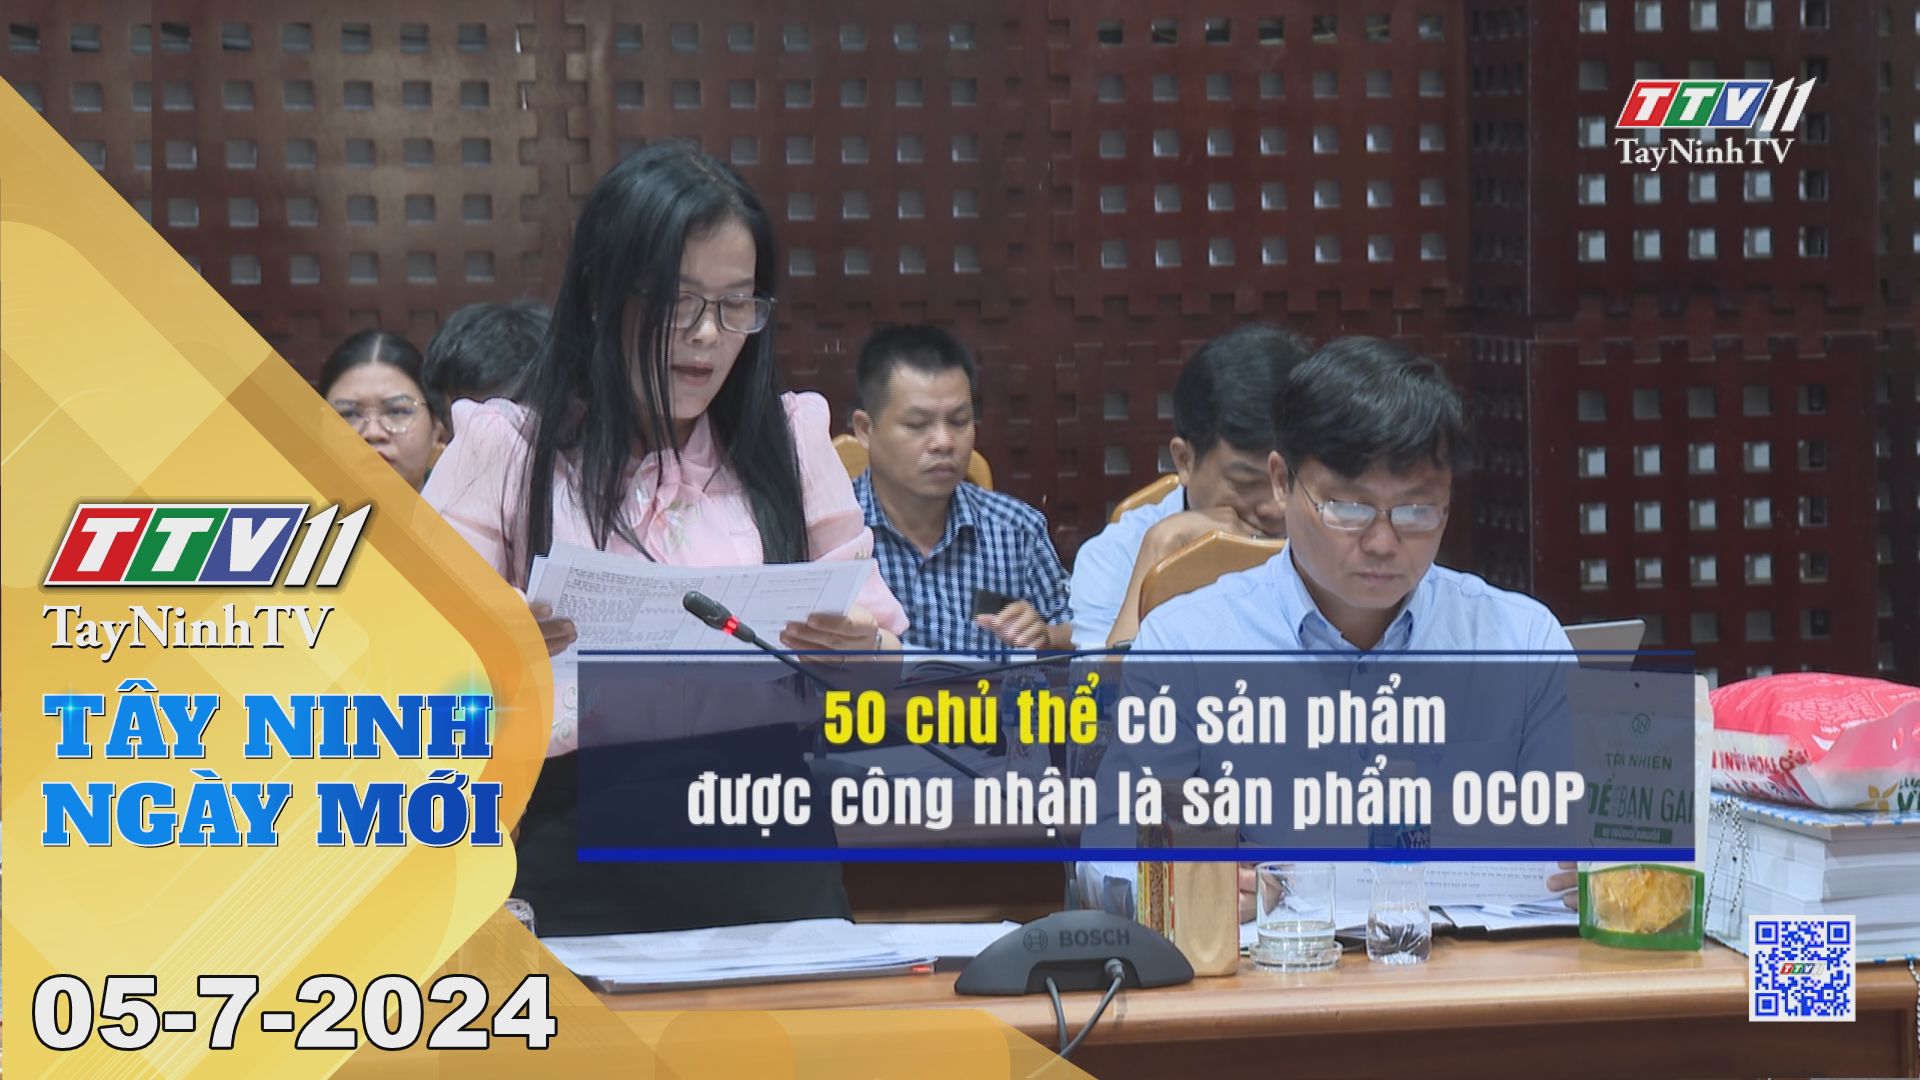 Tây Ninh ngày mới 05-7-2024 | Tin tức hôm nay | TayNinhTV